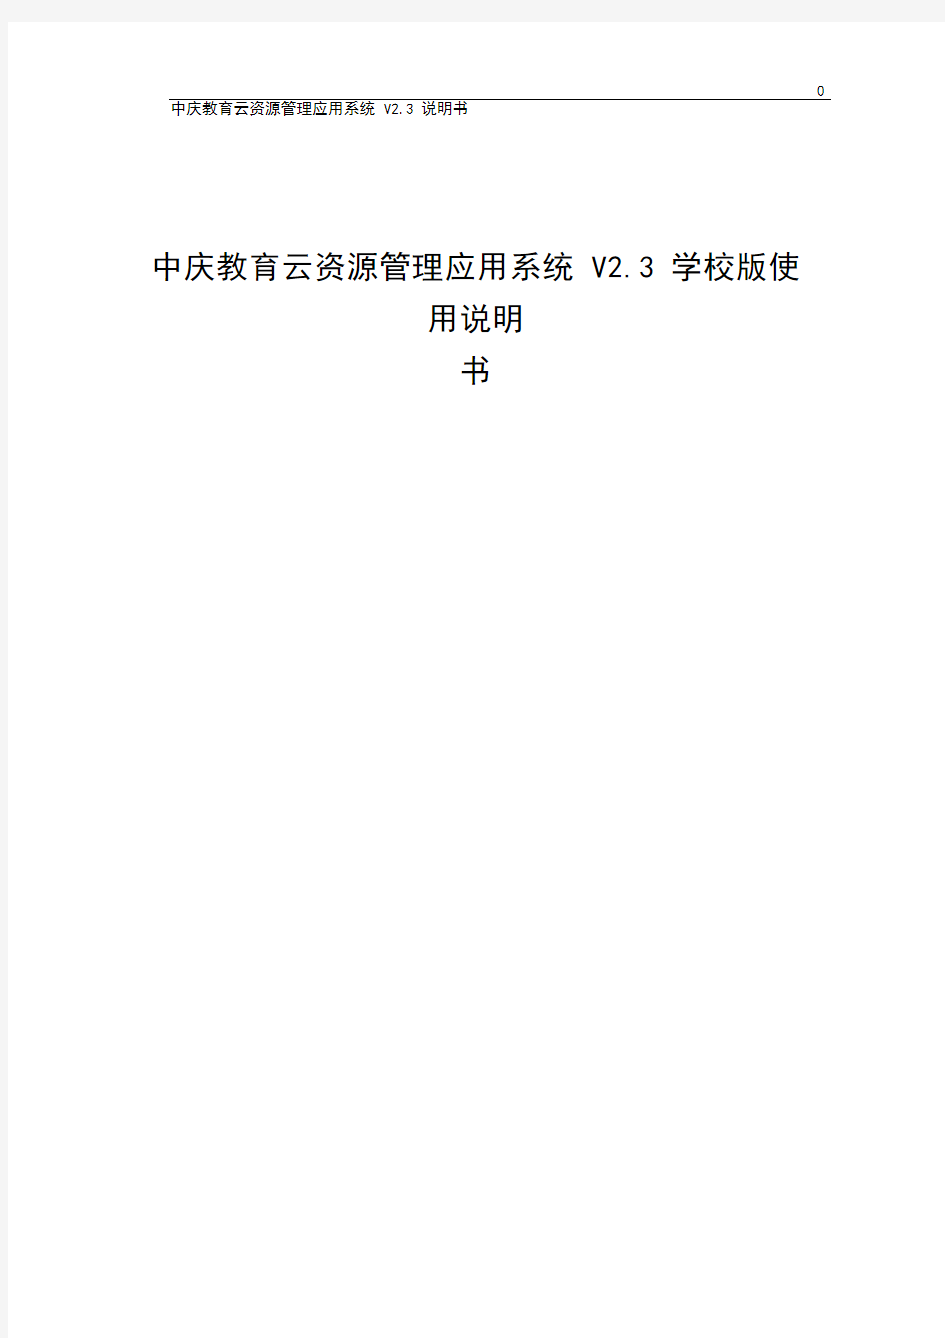 中庆教育云资源管理应用系统V2.3学校版使用说明书